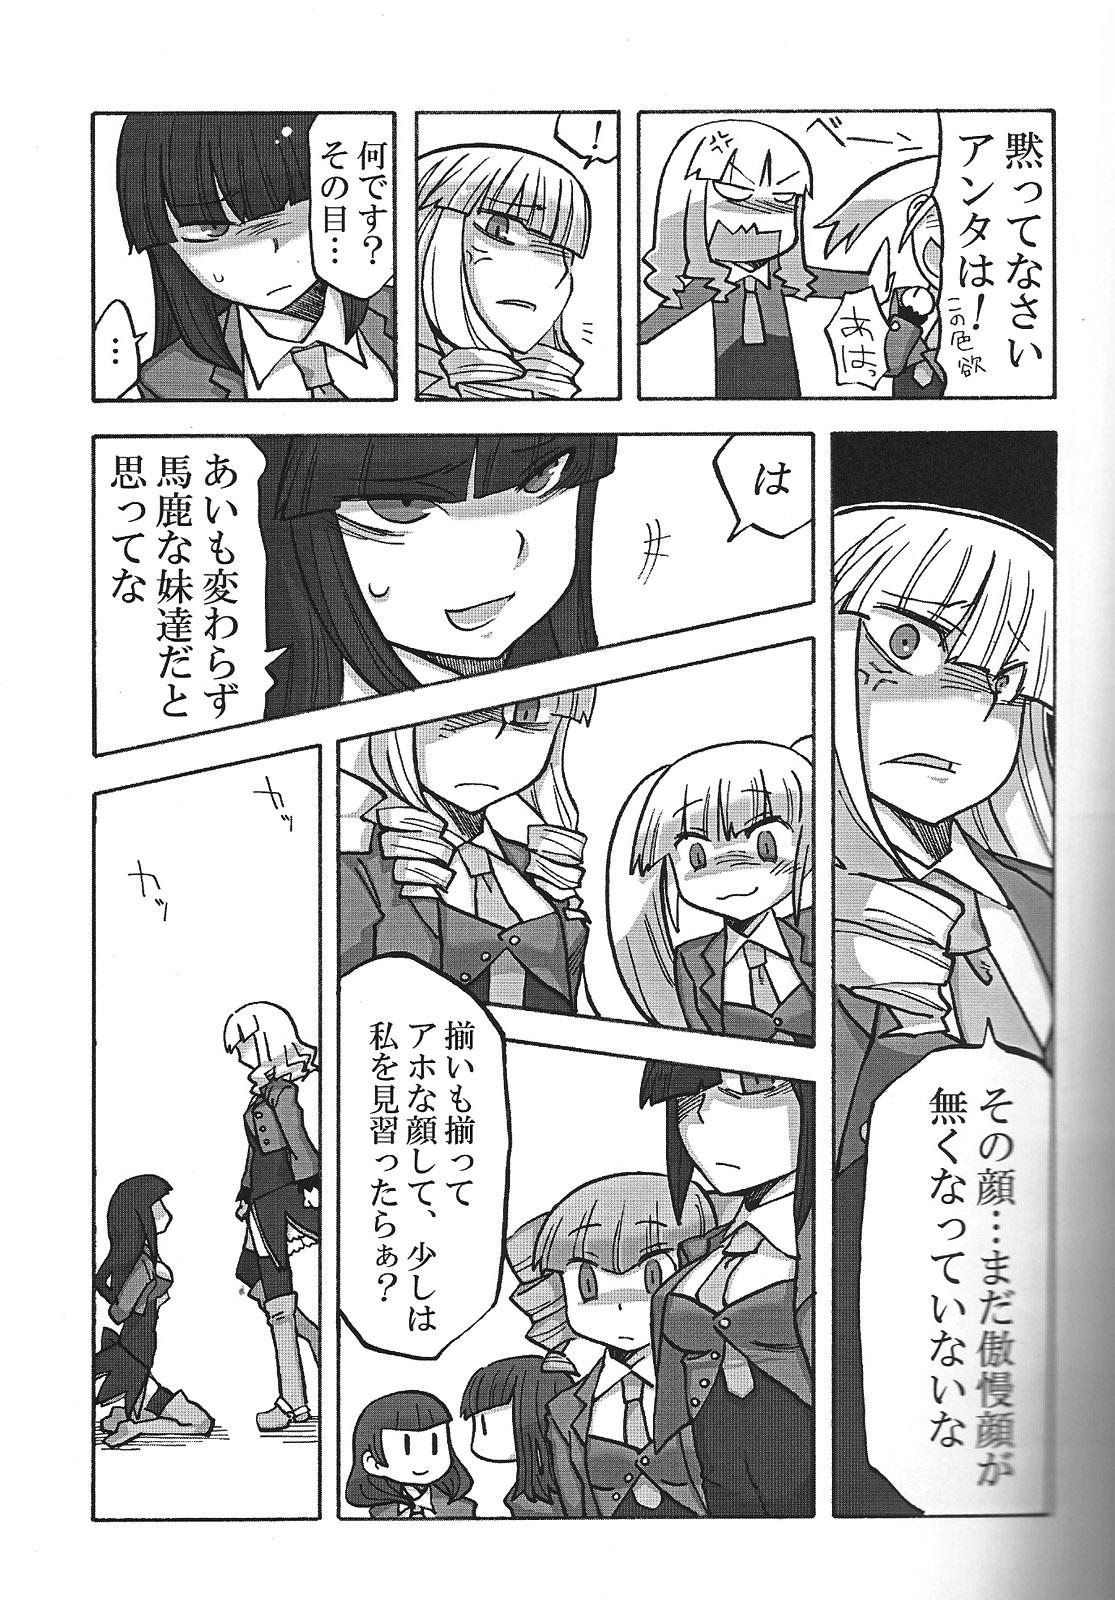 Rubbing Nakayoshi 7 Shimai - Umineko no naku koro ni Ftvgirls - Page 6